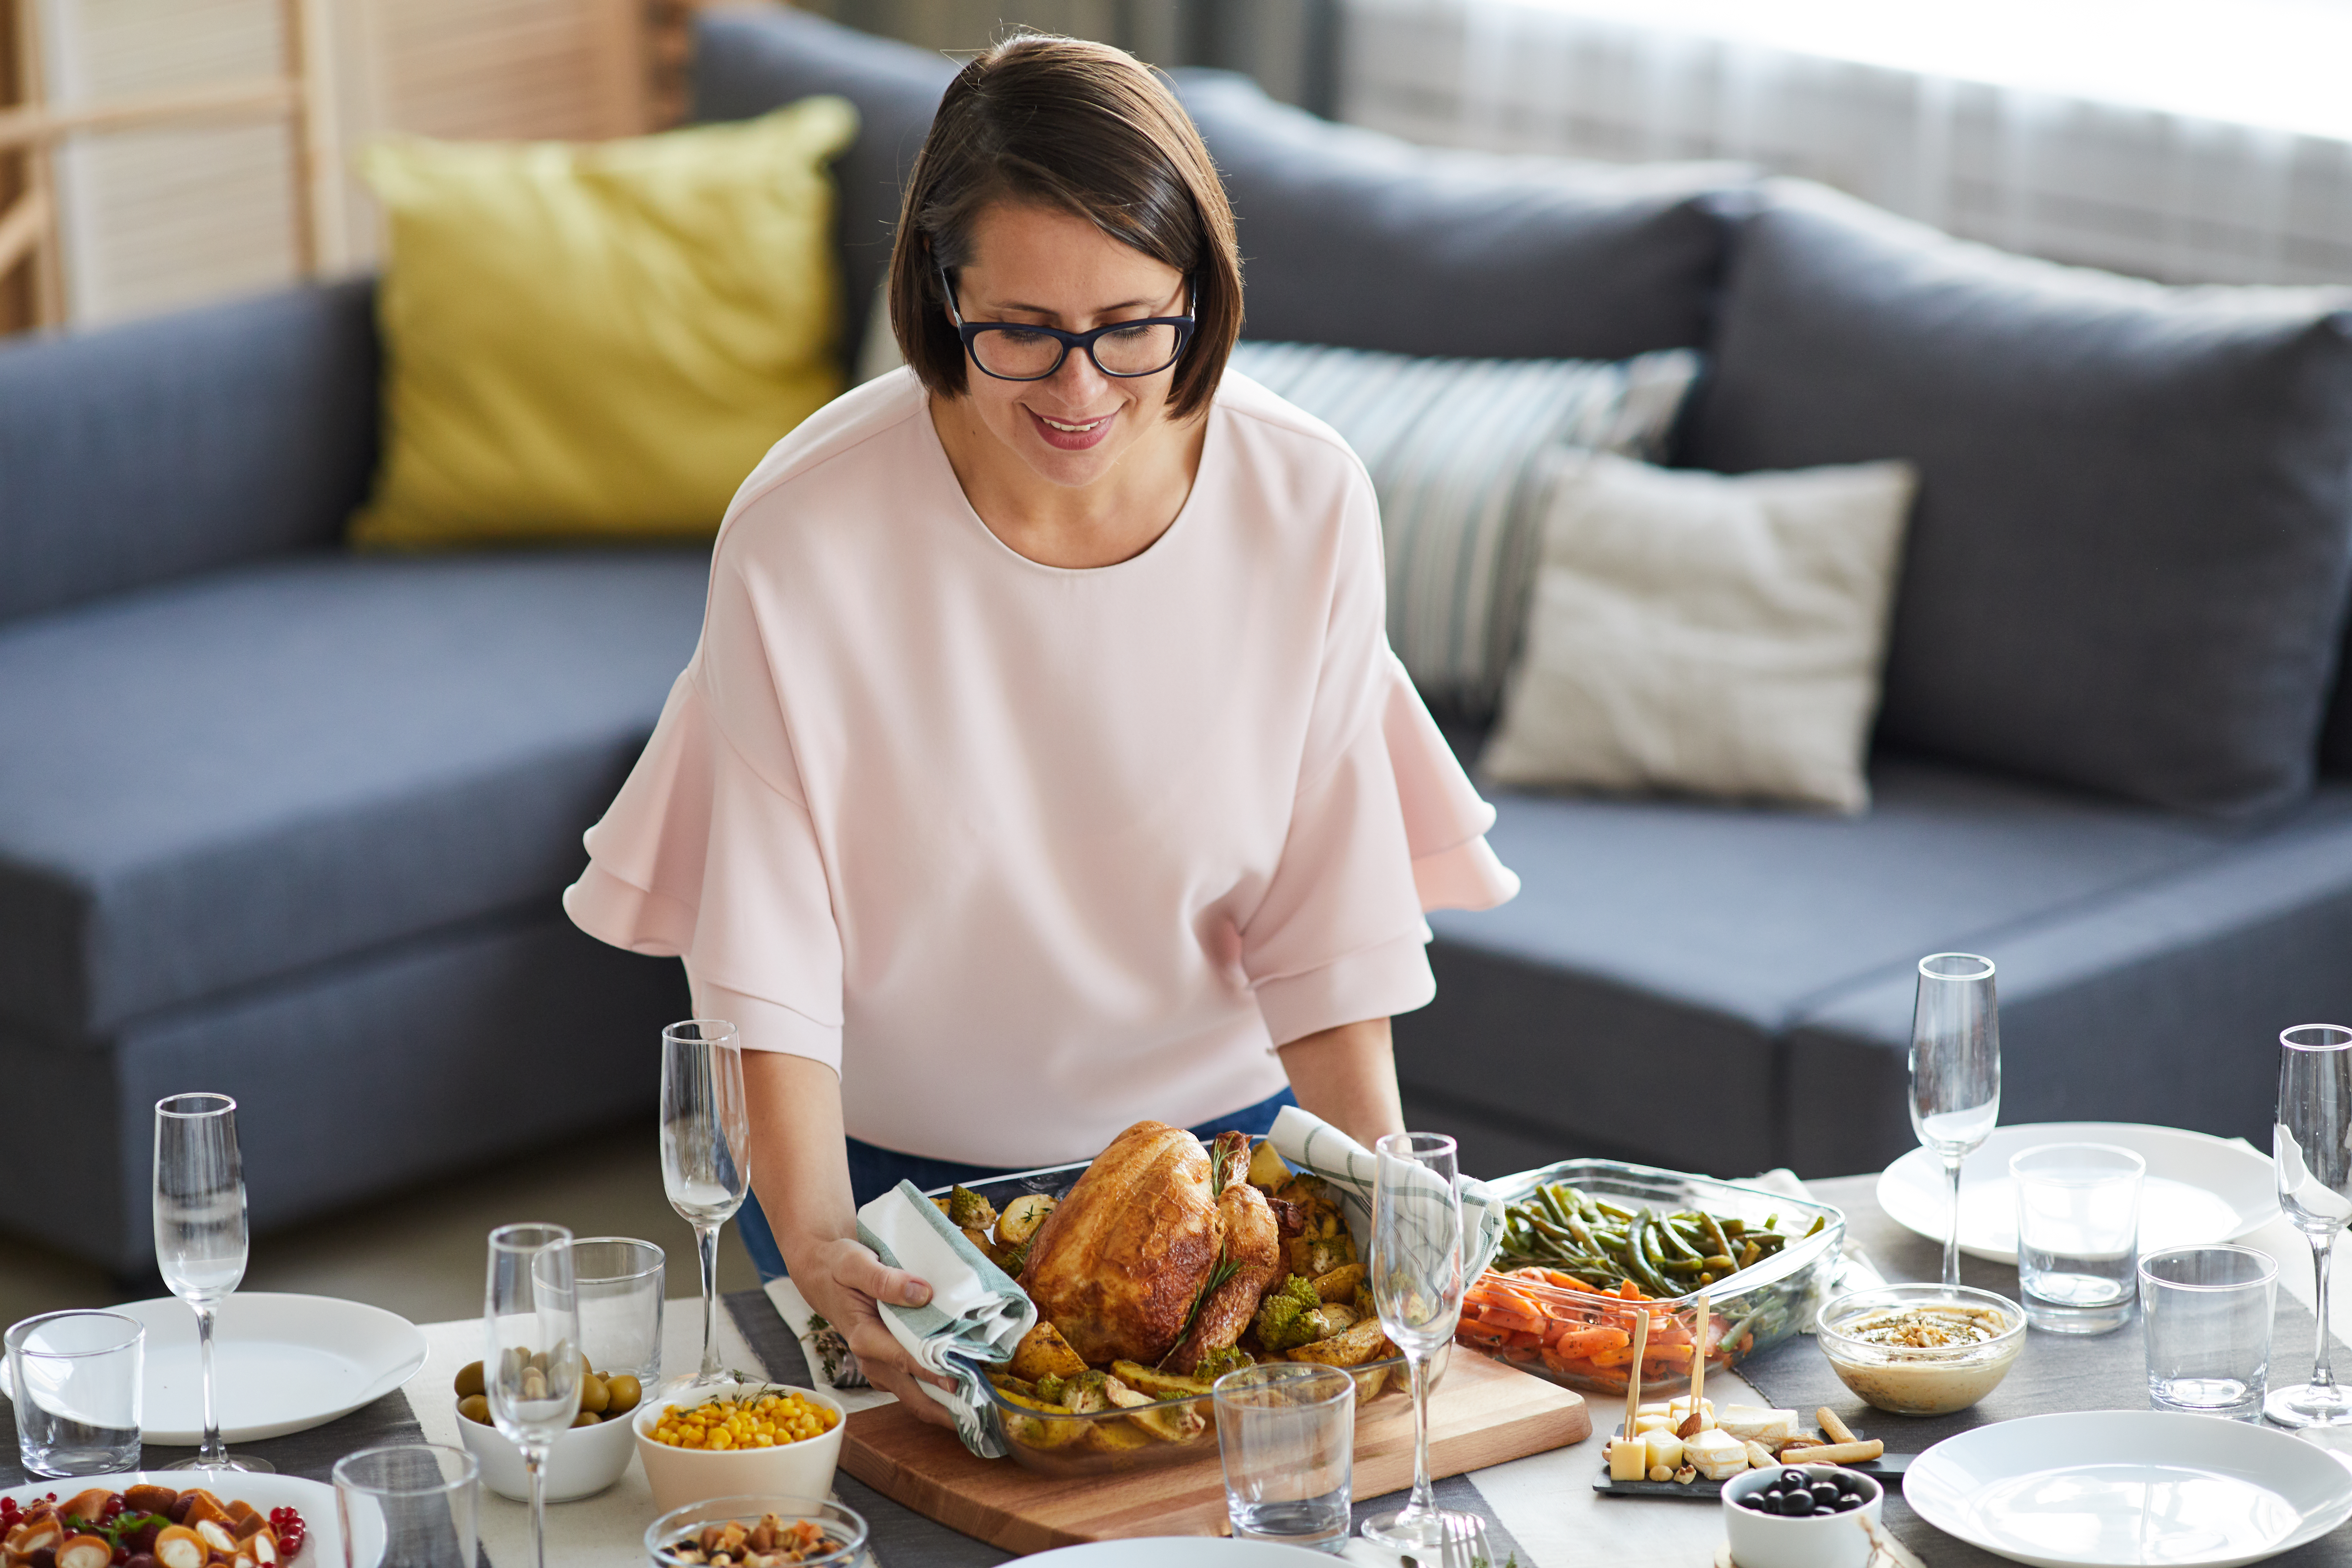 A woman serves the dinner | Source: Shutterstock